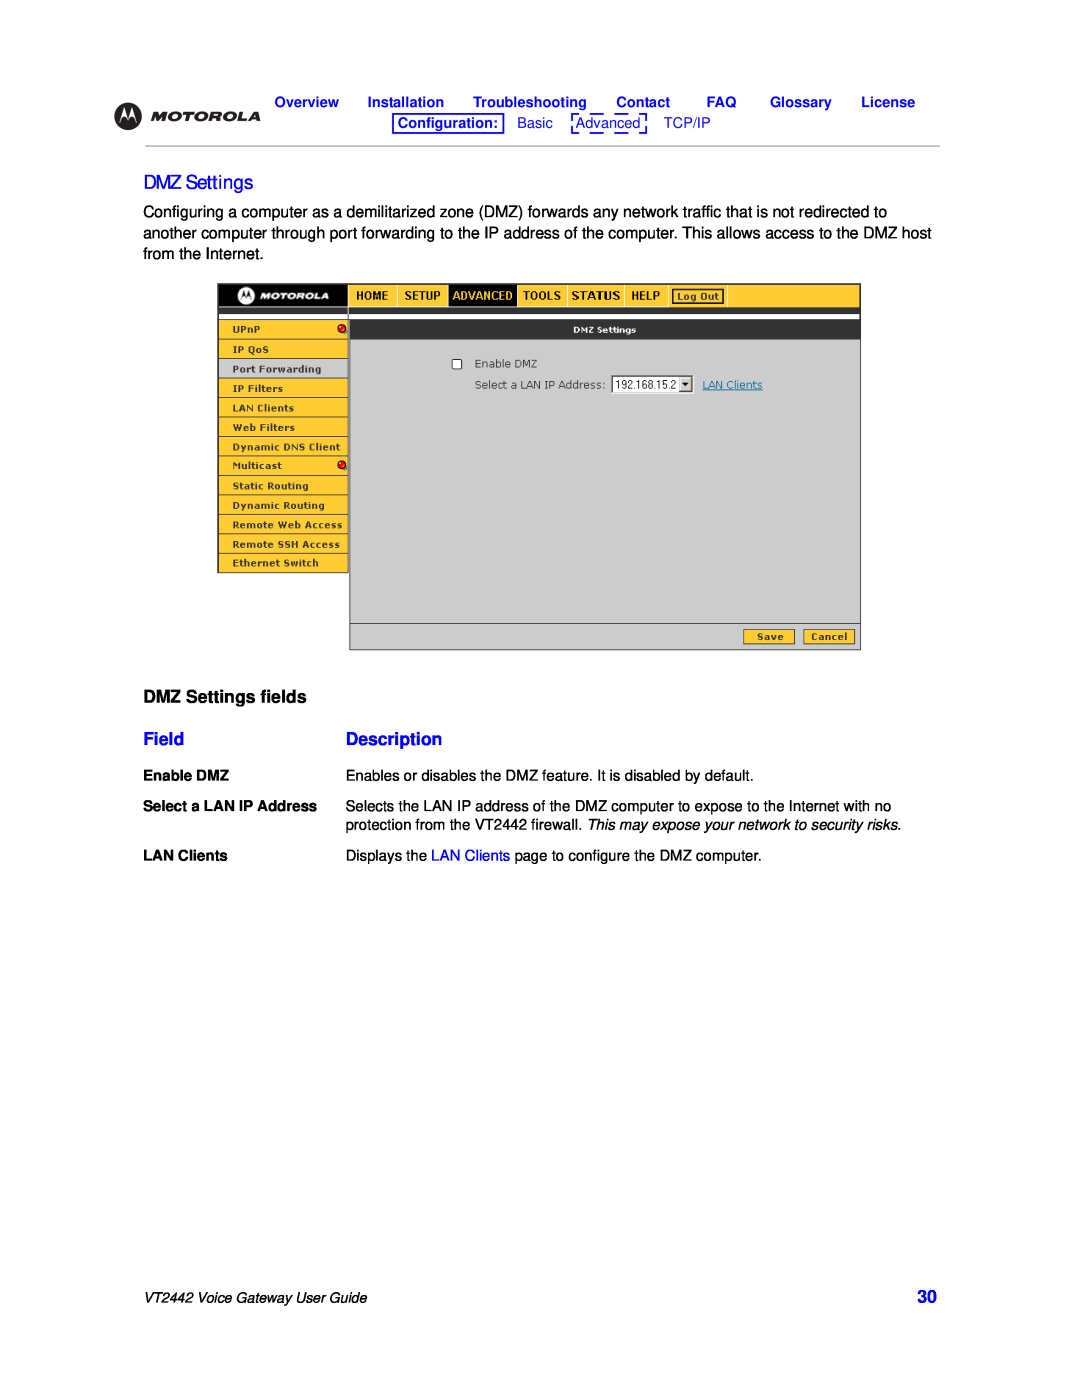 Motorola VT2442 manual DMZ Settings fields, Field, Description 